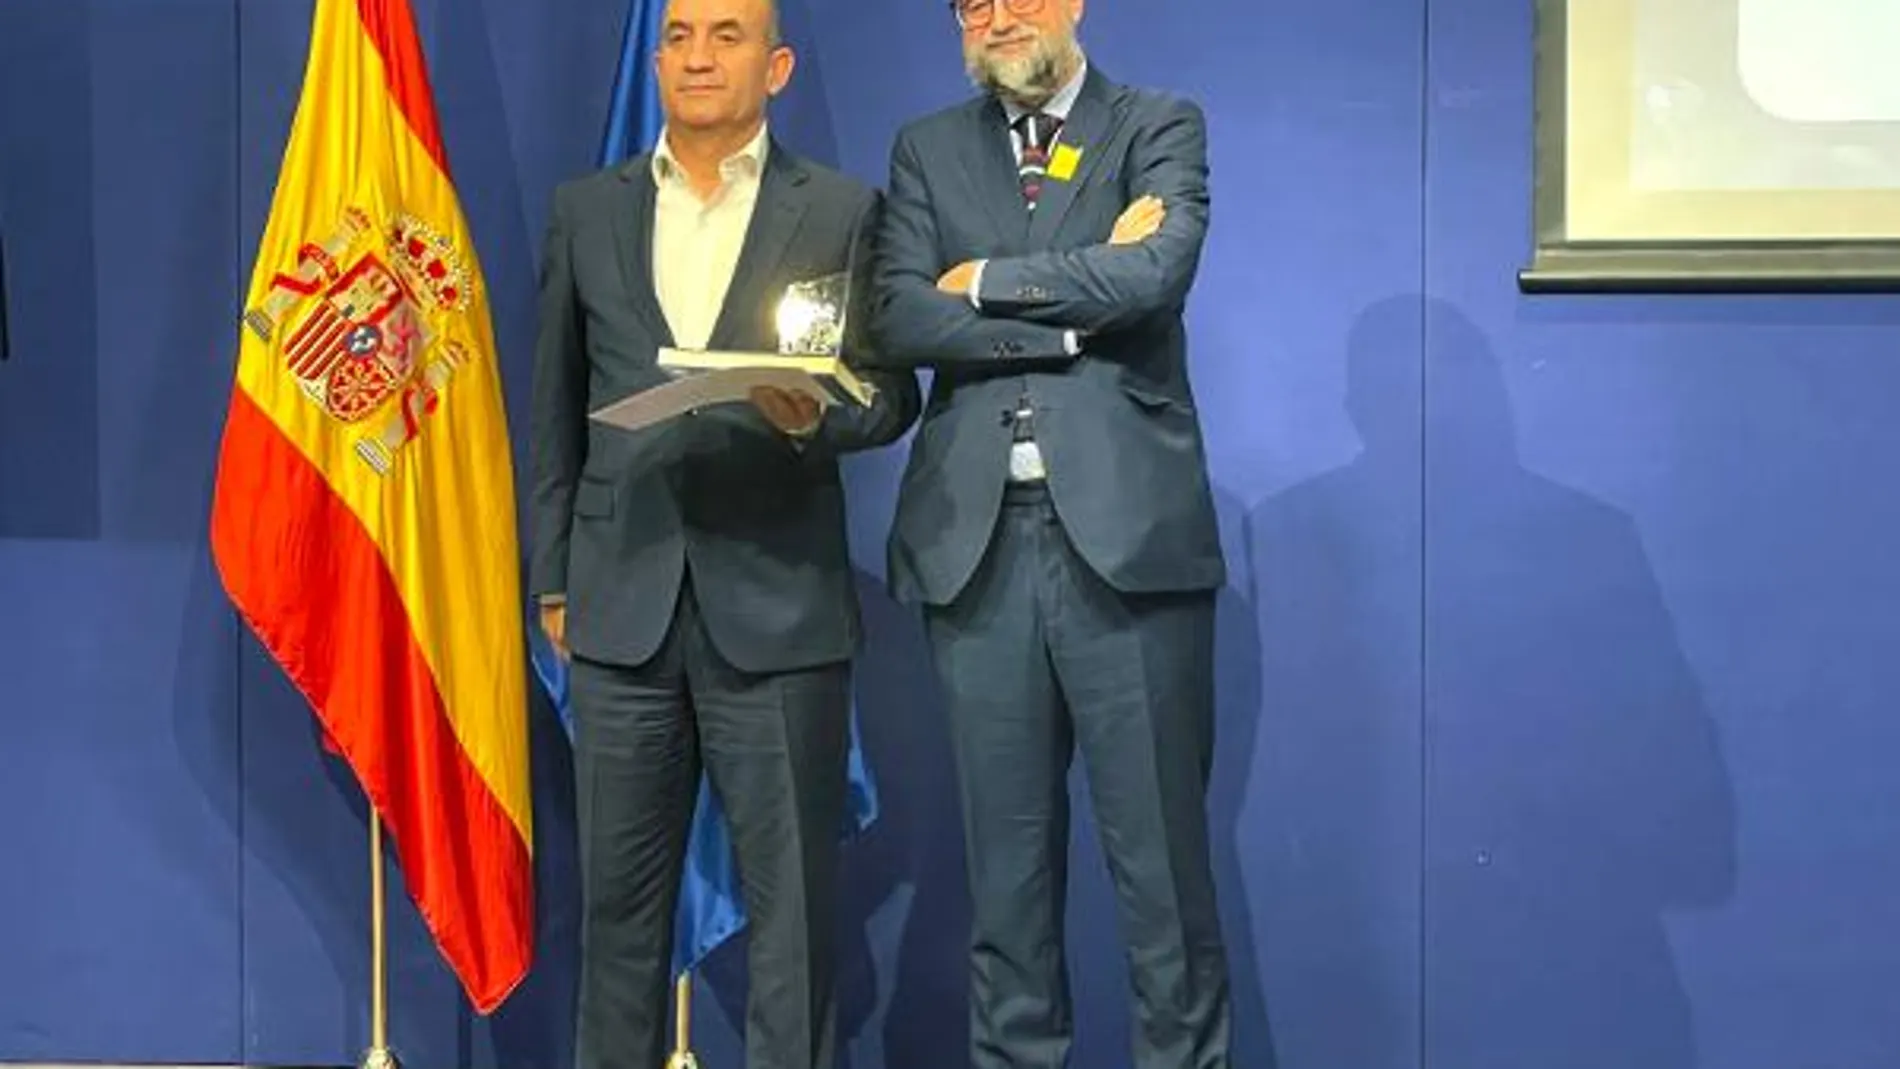 XII Edición de los Premios Corresponsables Iberoamérica 2021. Juan Royo, de CulturaRSC.com, ha entregado el Premio a Juan Pablo Merino, director de Comunicación y RSC de Aqualia